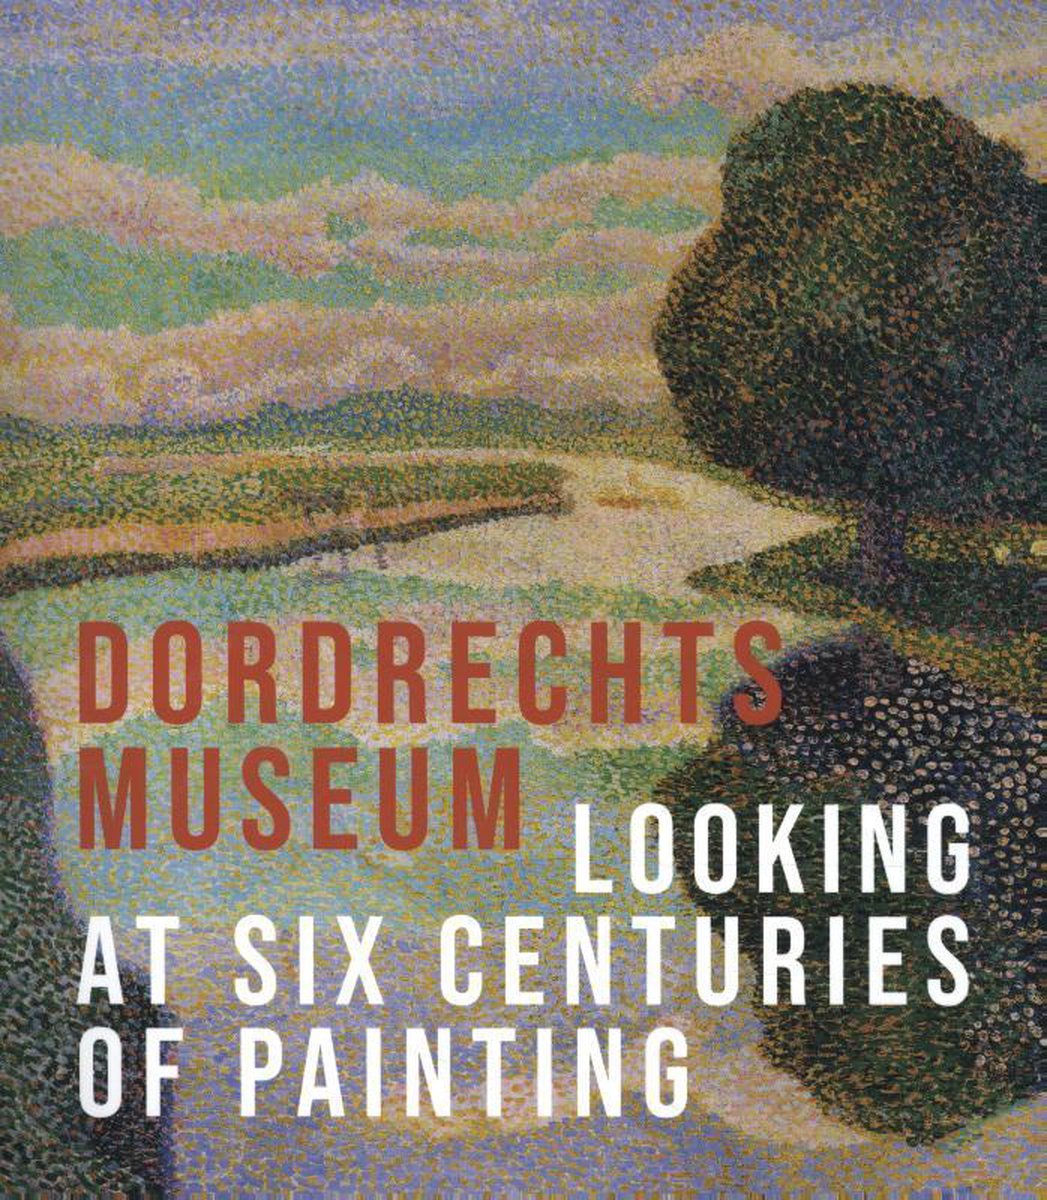 The Dordrecht Museum - Looking at Six Centuries of Painting - Liesbeth van Noortwijk